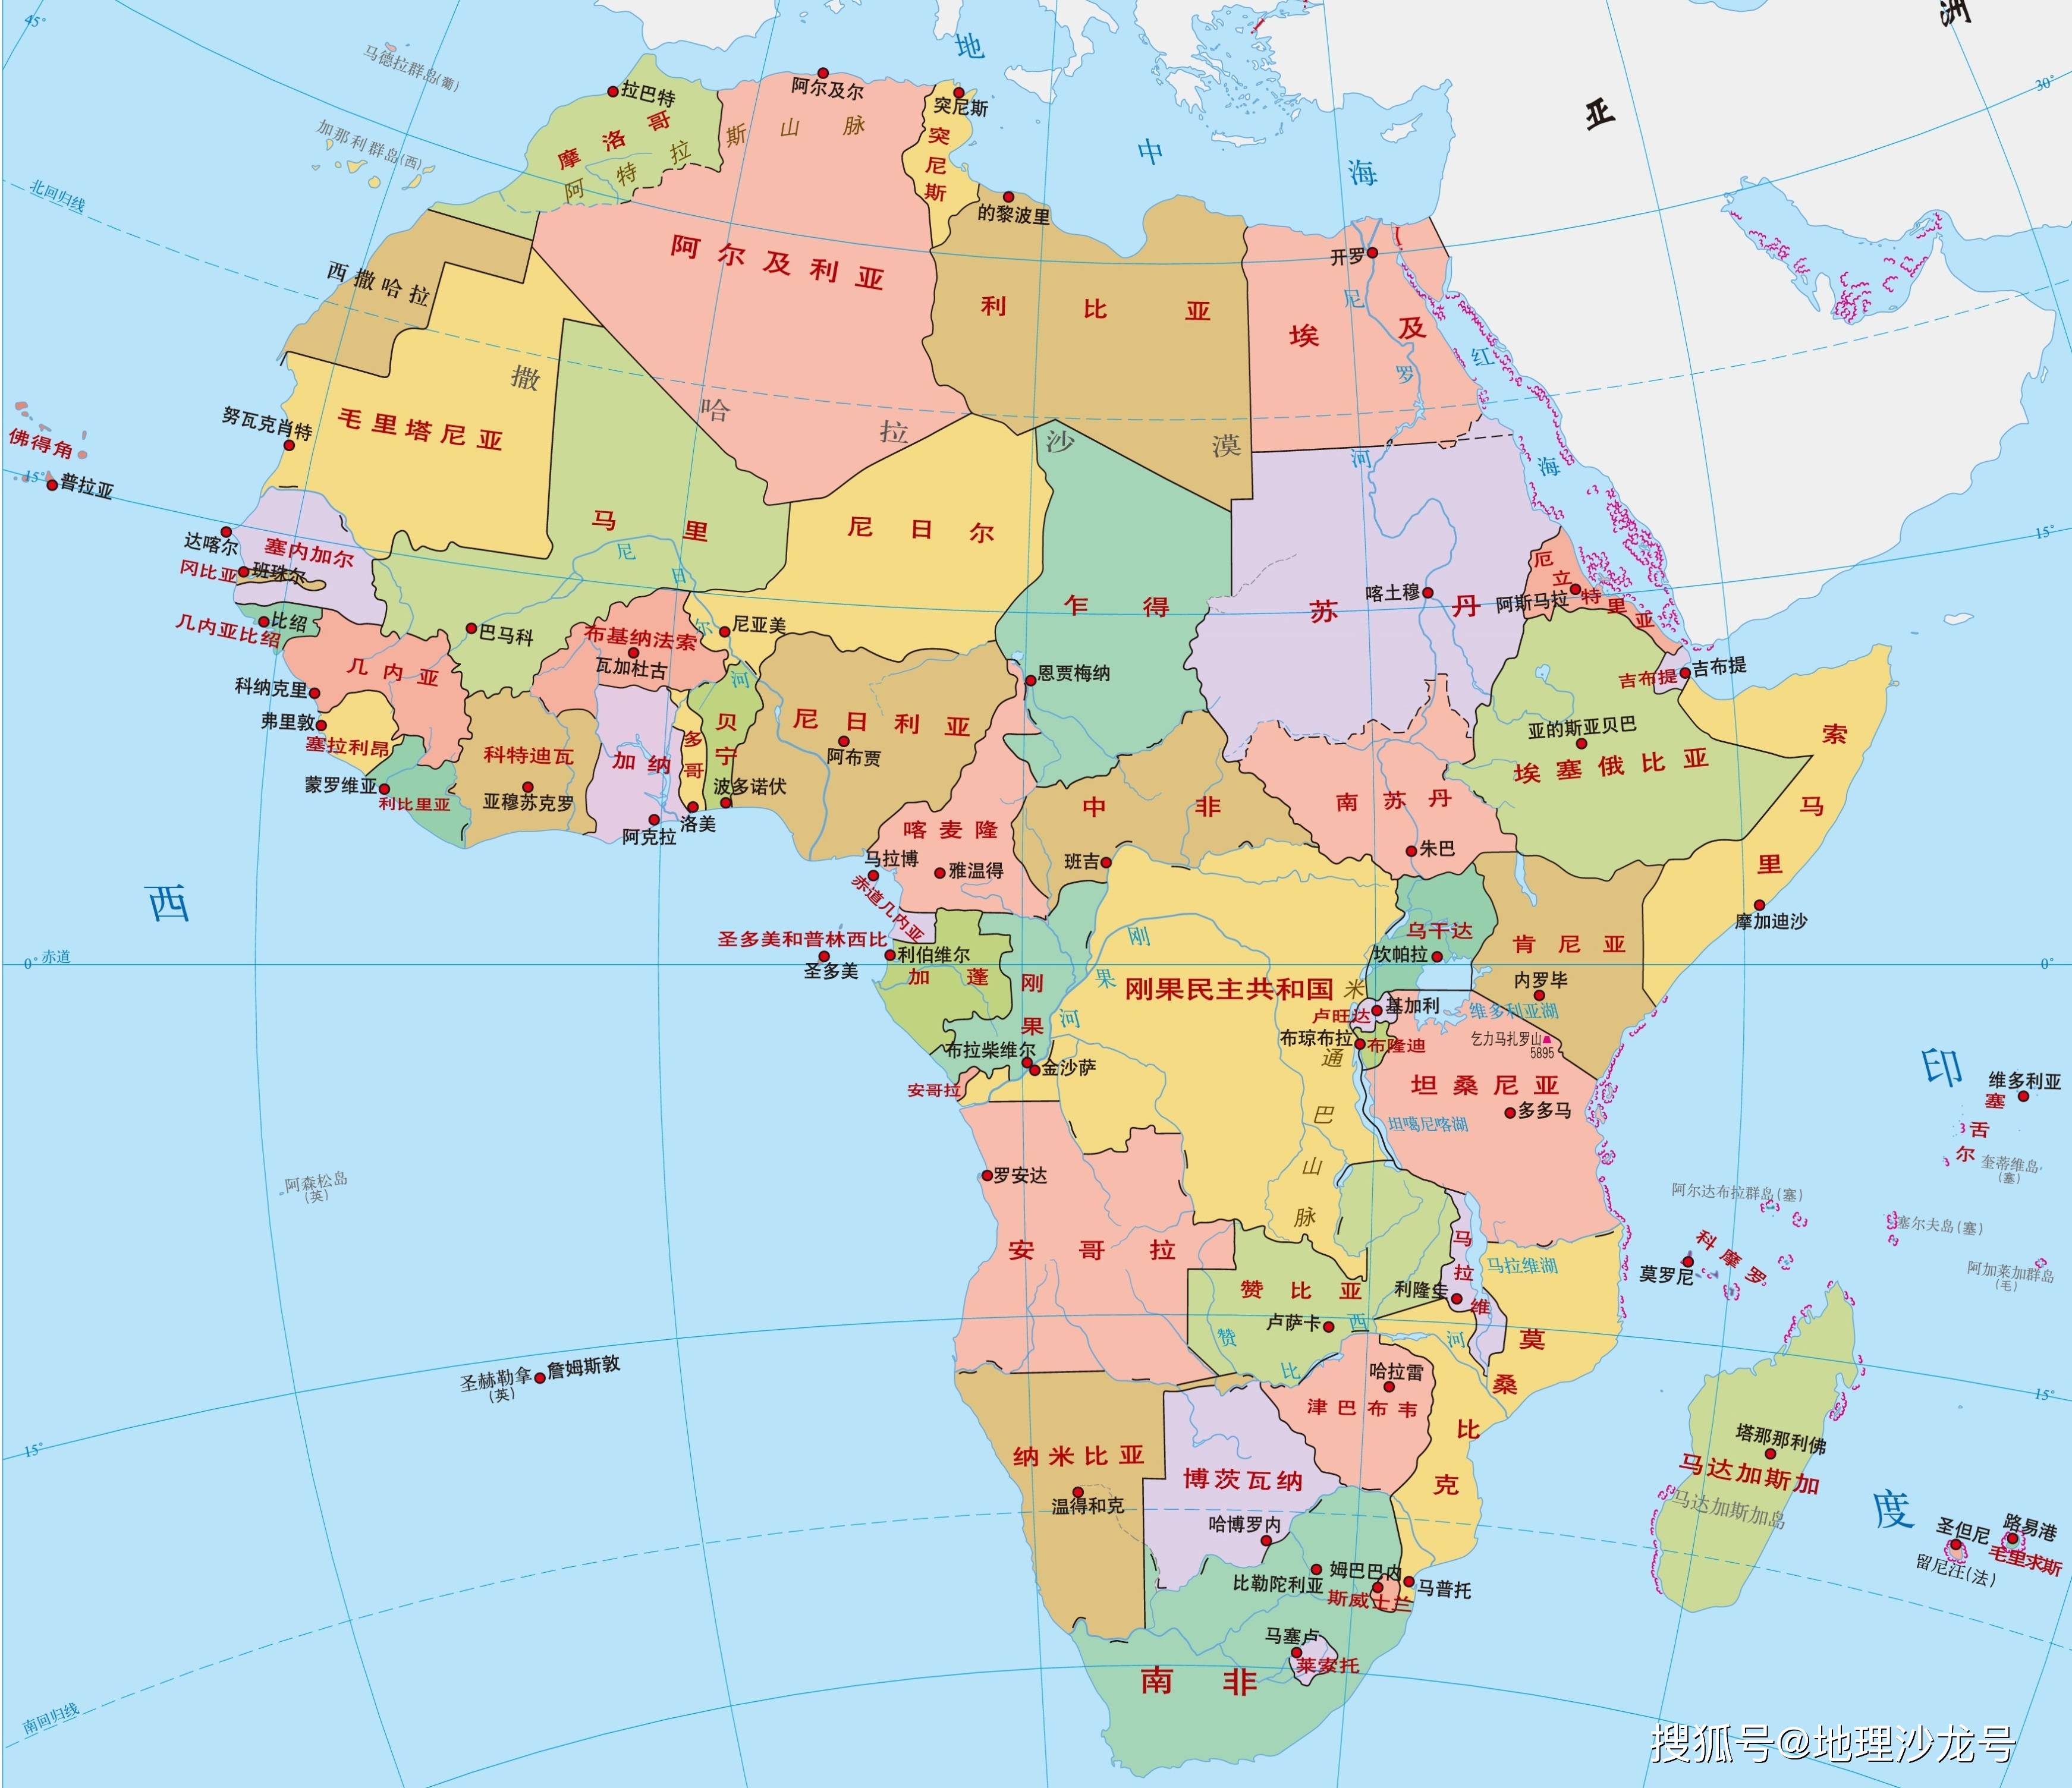 这六个国家面积从大到小分别是印度,阿根廷,哈萨克斯坦,阿尔及利